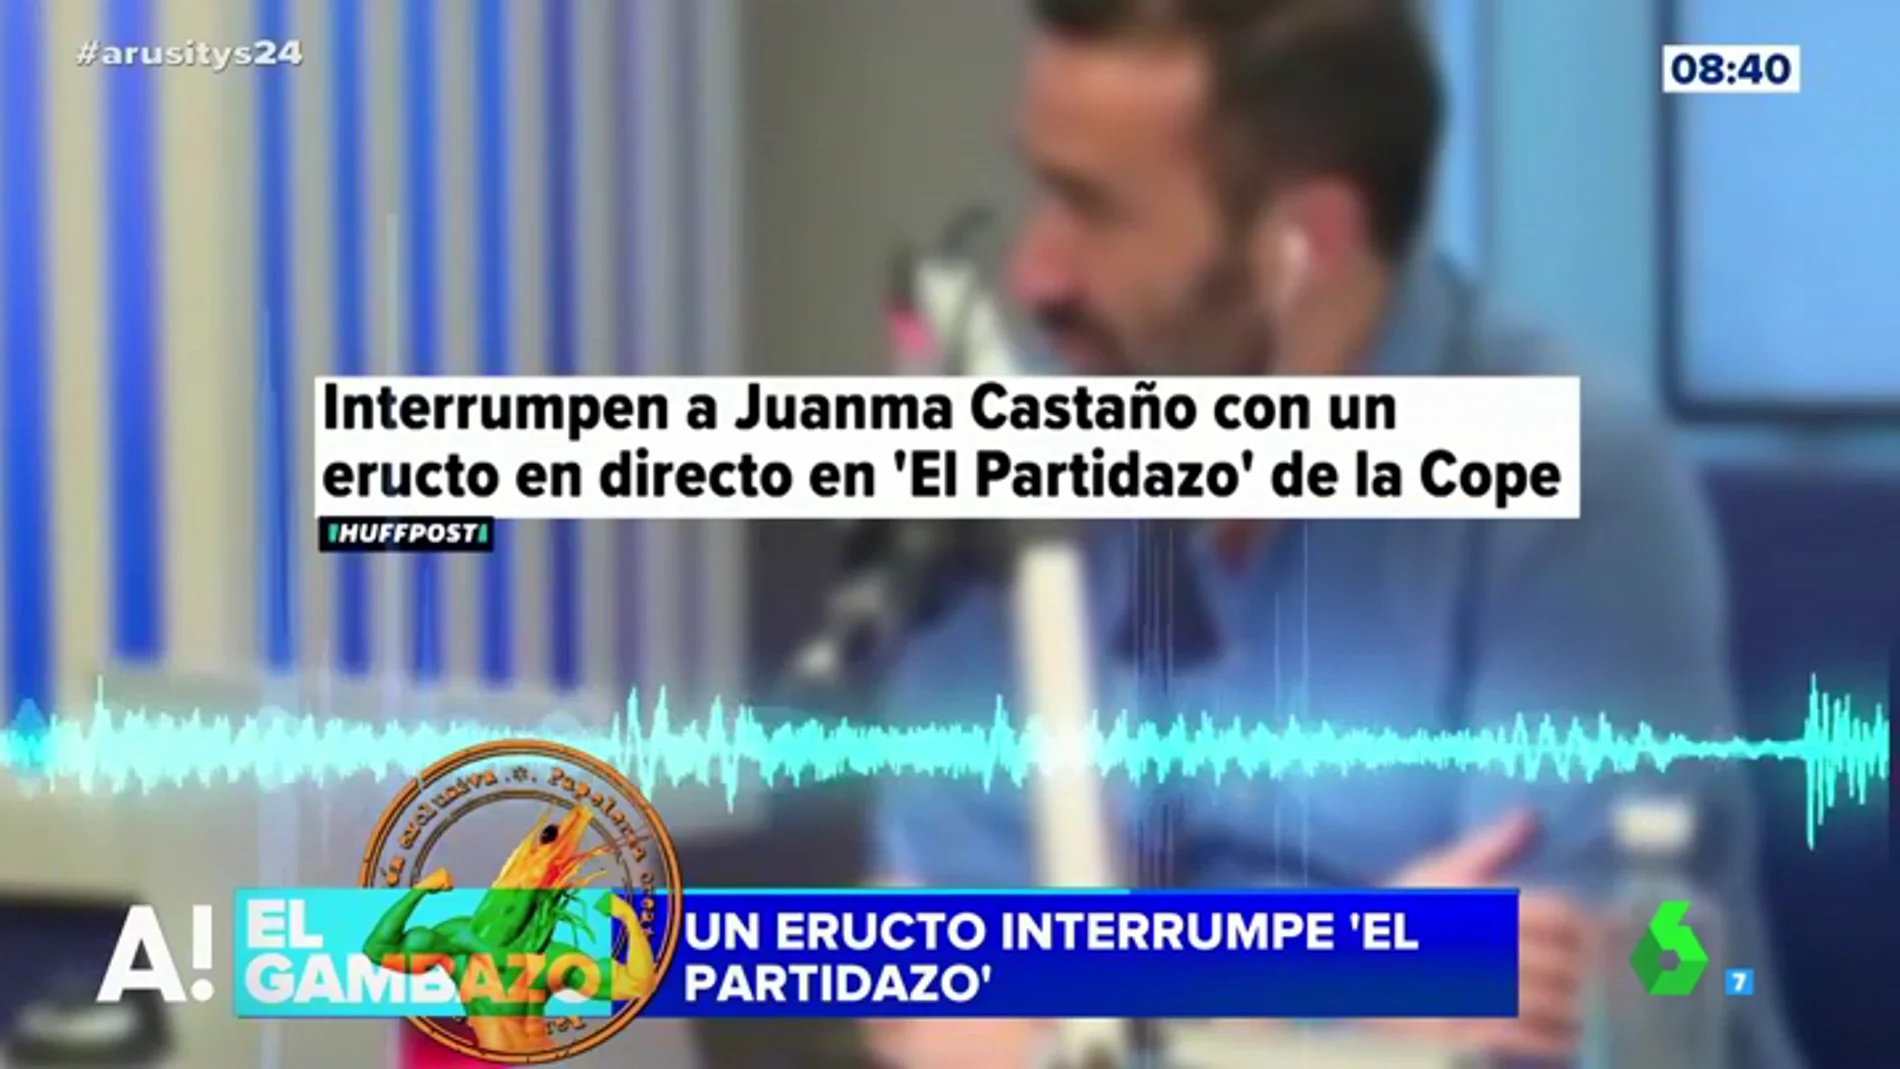 El increíble cabreo de Juanma Castaño al ser interrumpido por un eructo en pleno directo